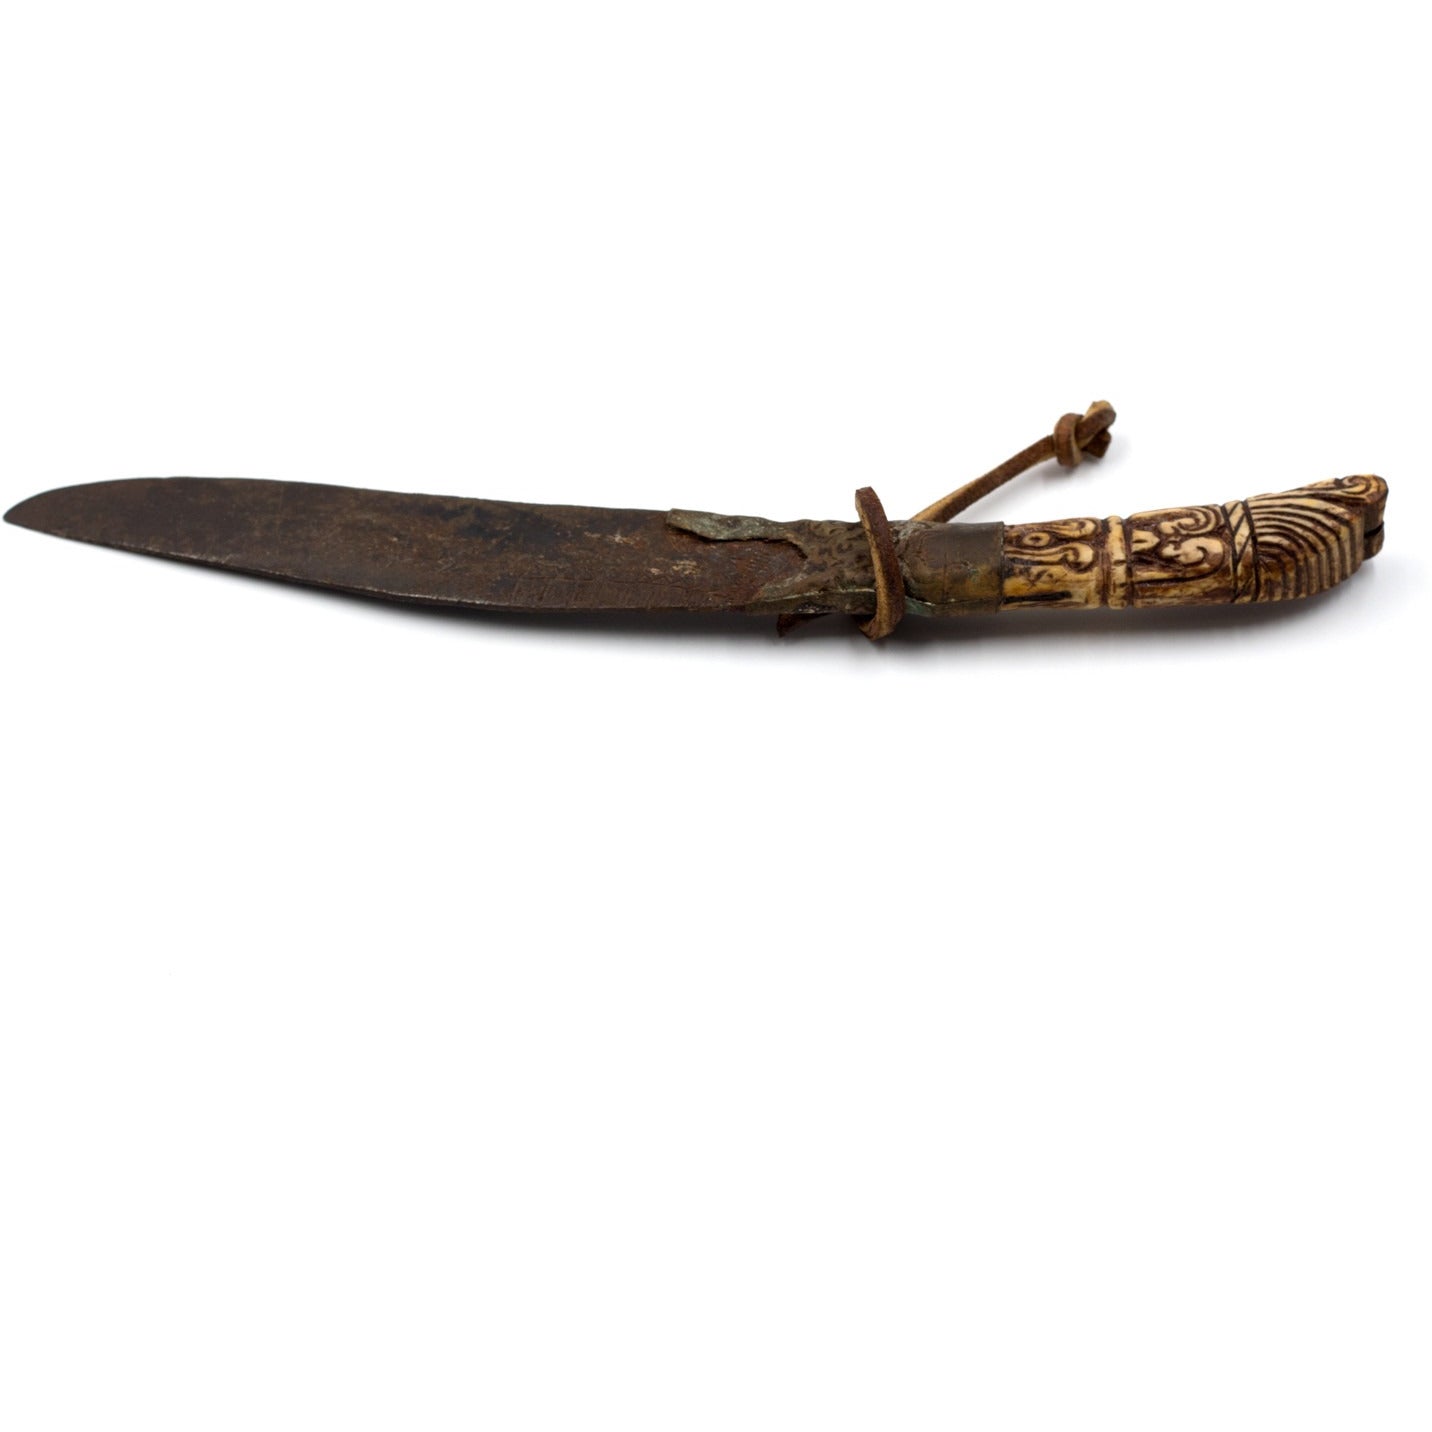 Sri Lankan Ivory or Boned-Handled Knife